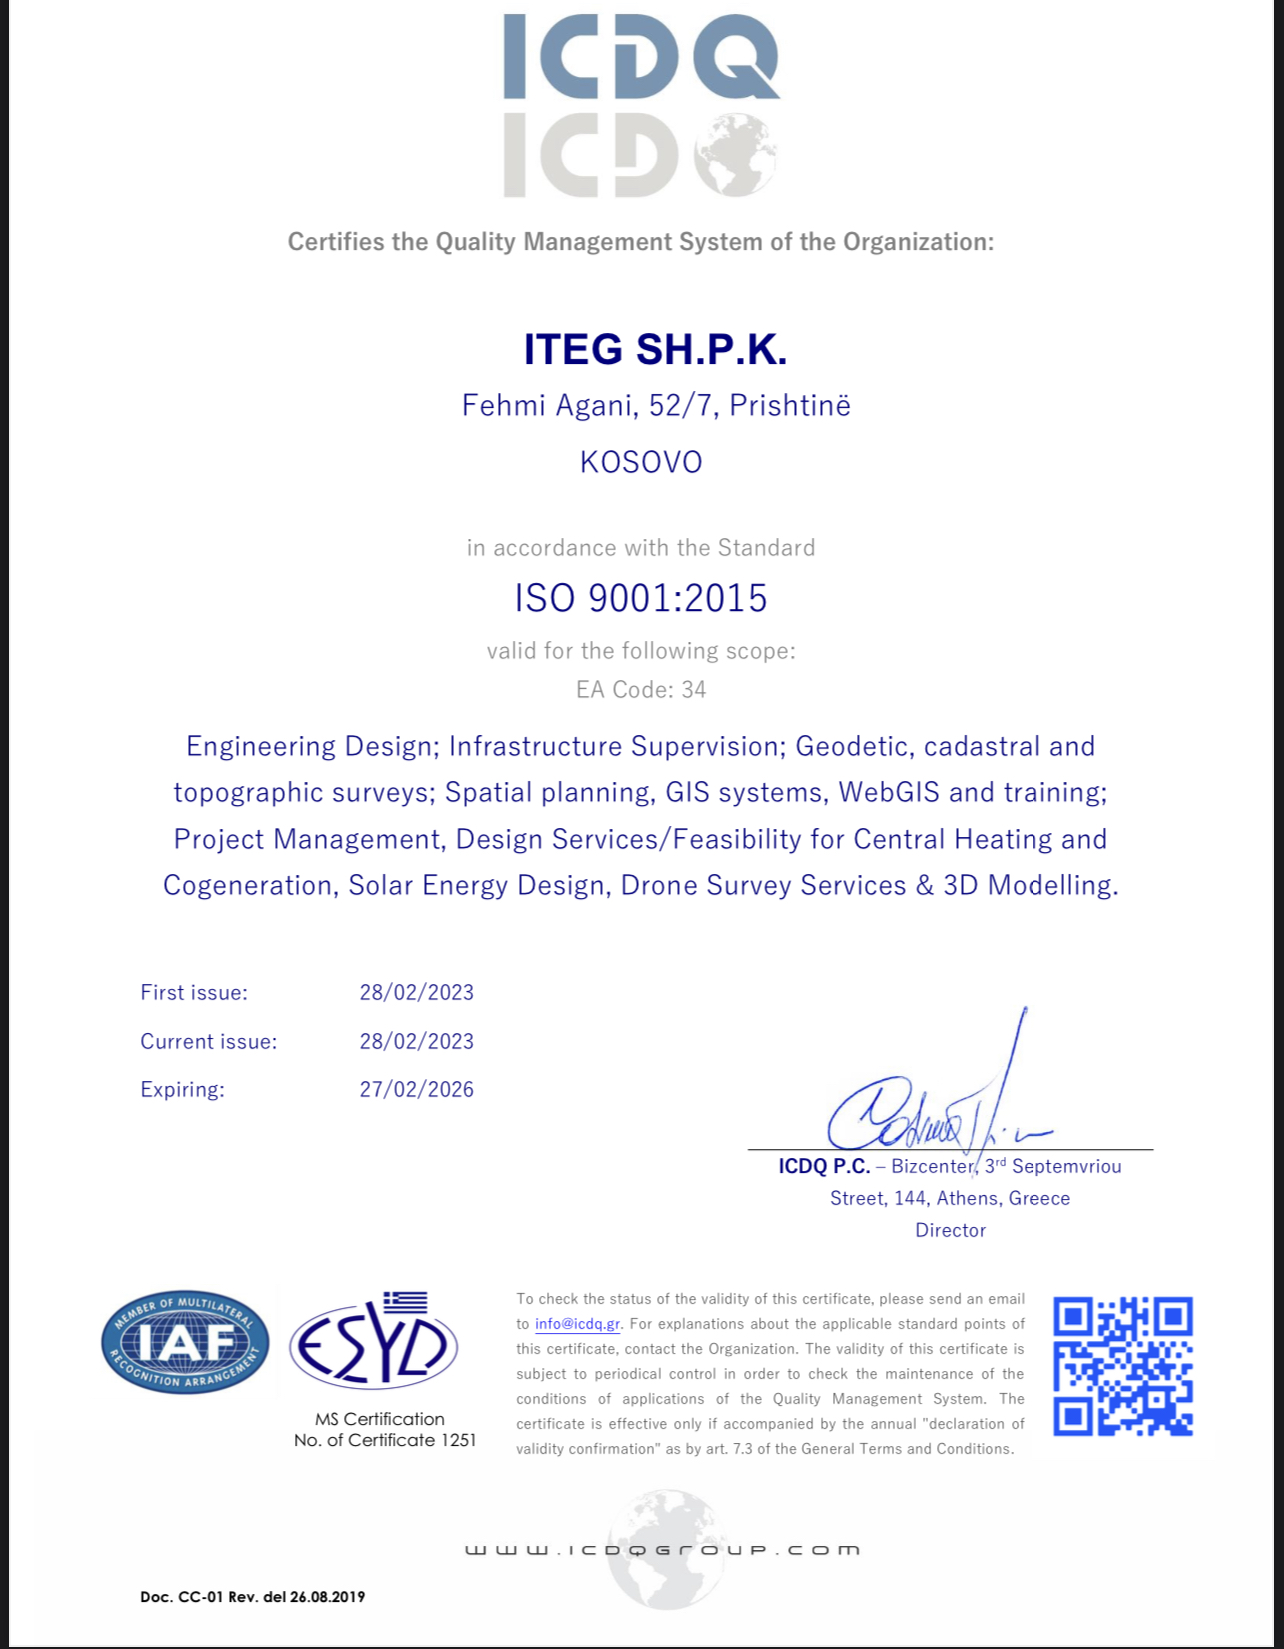 ITEG llc certified for ISO 9001:2015